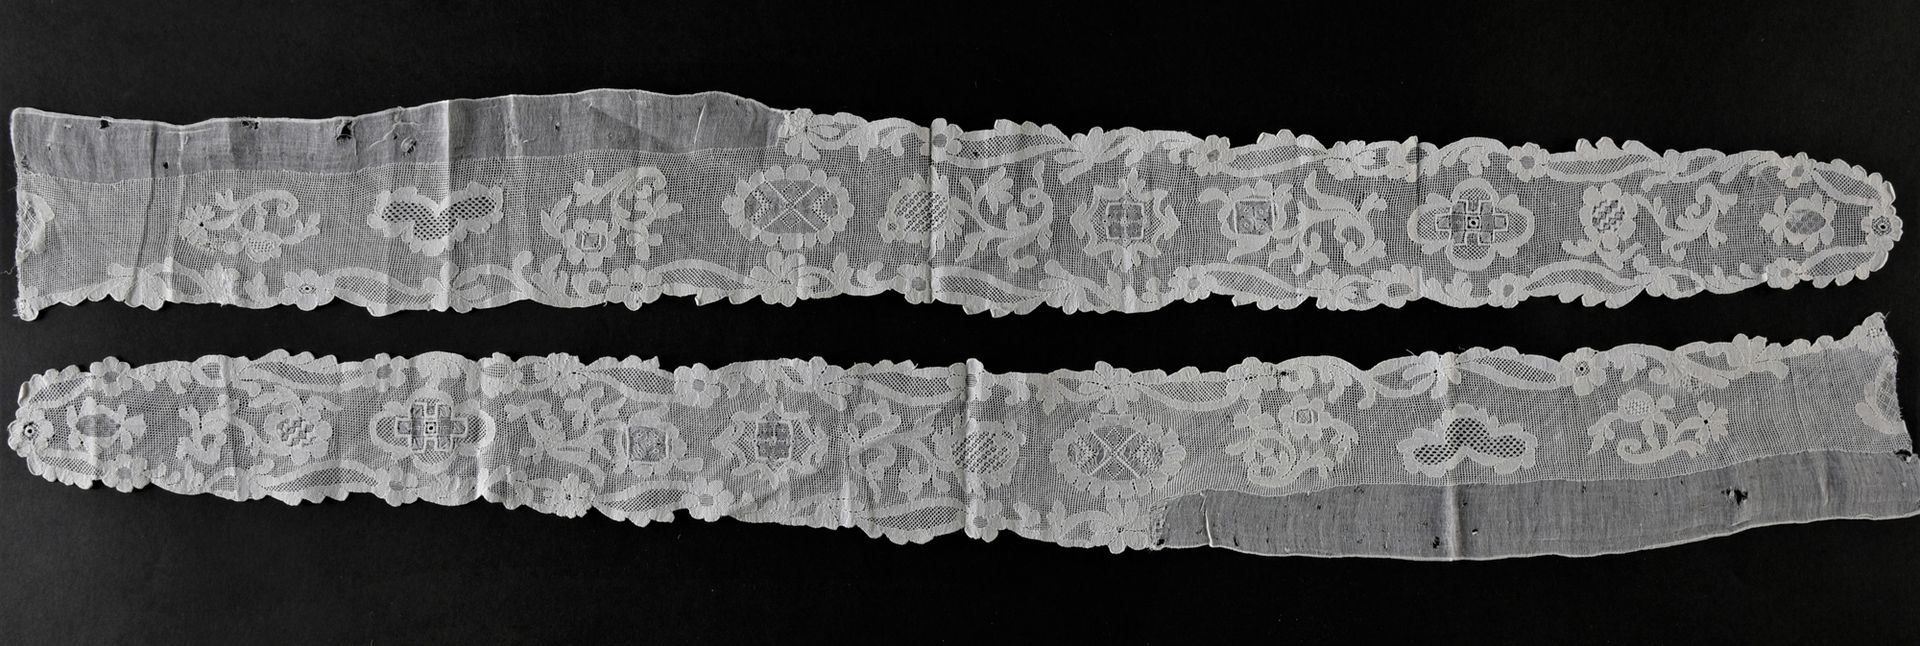 Null Ein Paar weiß bestickte Bärte, um 1750-60.

Bärte und Passe, nordeuropäisch&hellip;